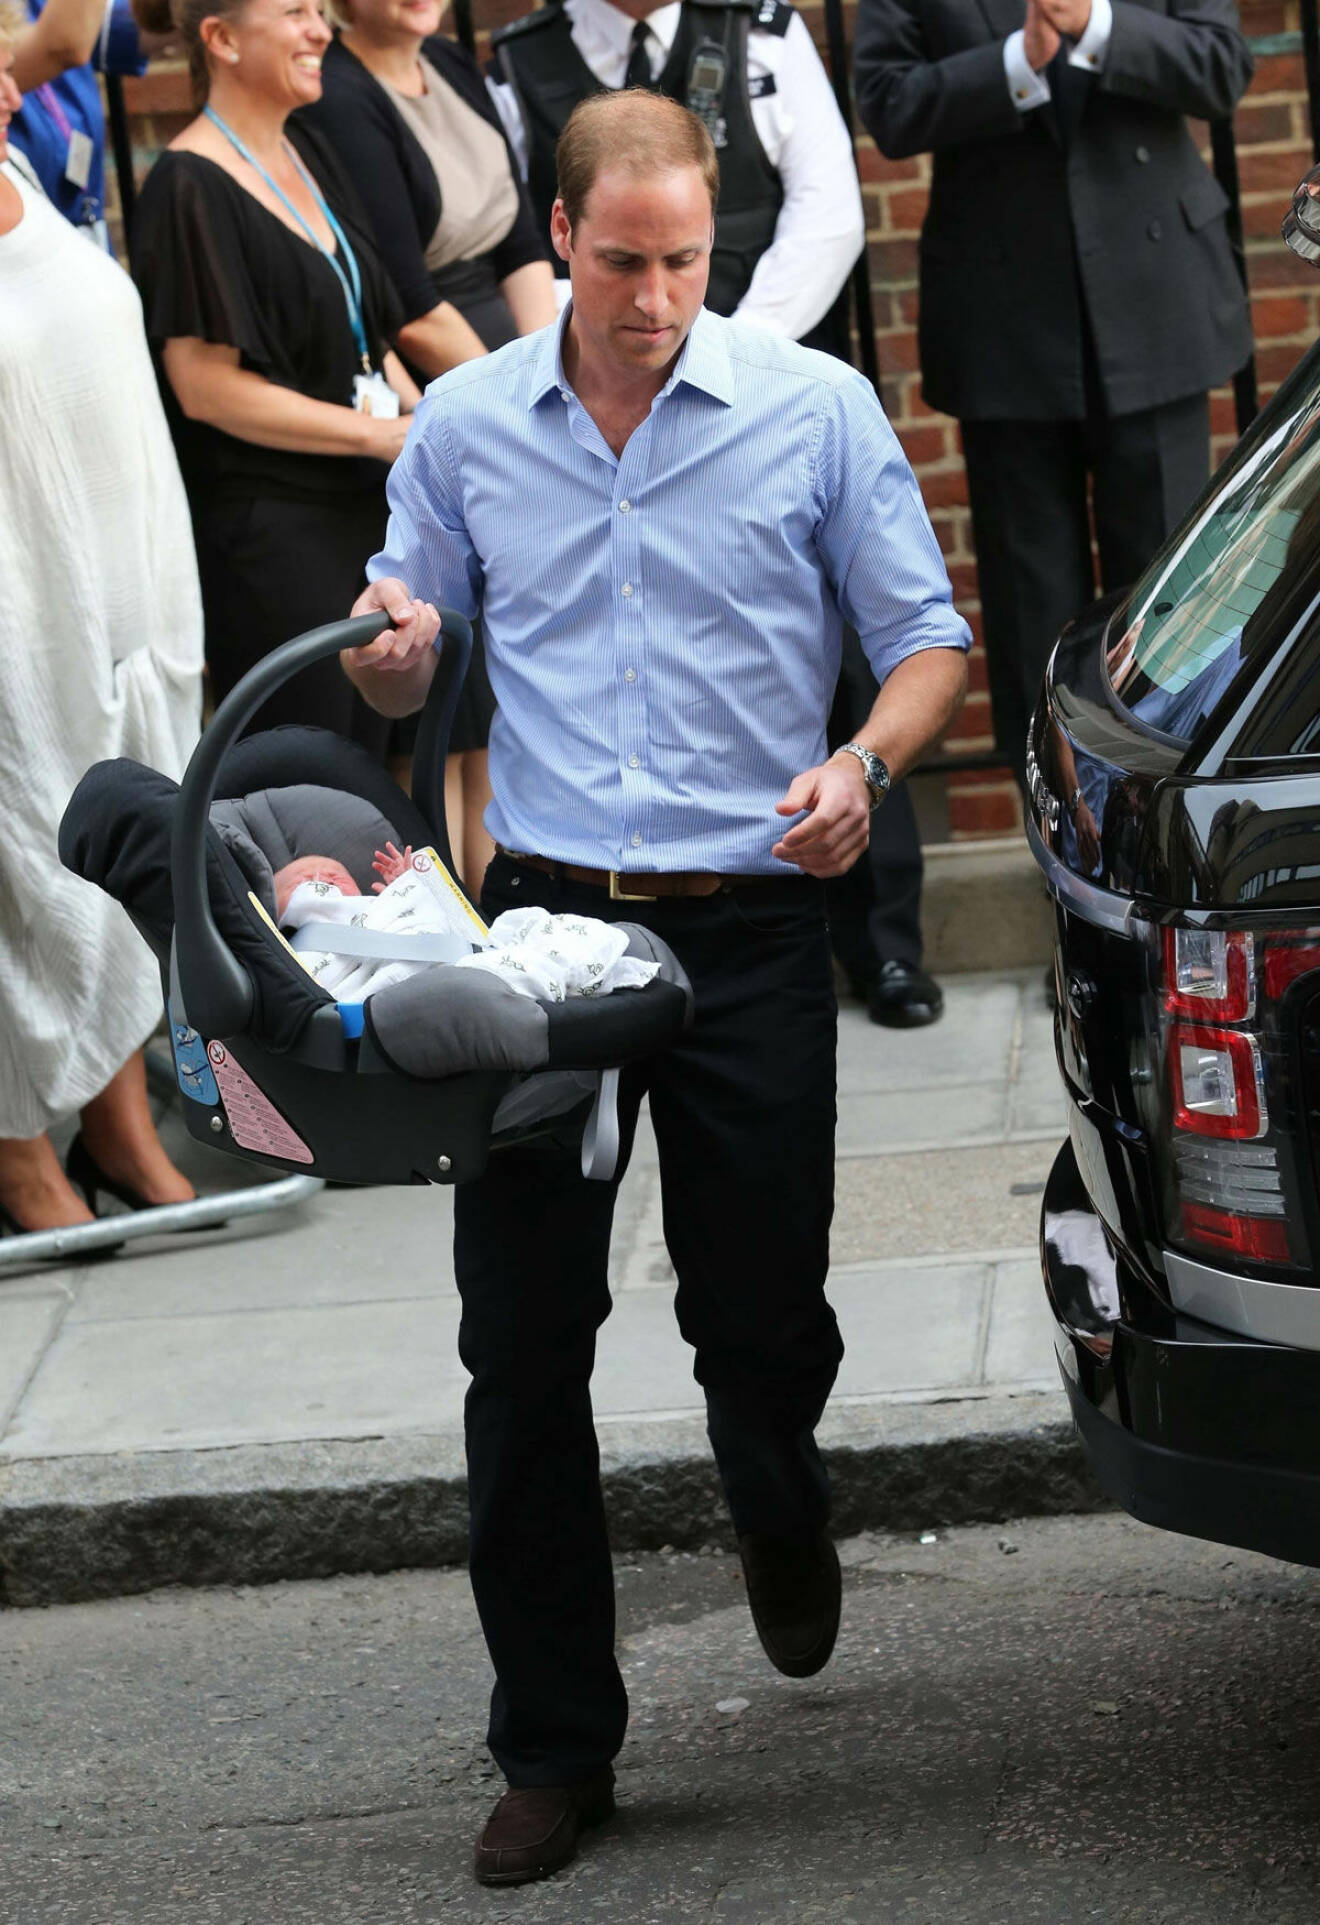 Prins William är en rutinerad småbarnspappa som snart får sitt tredje barn. Här roddar han babybilstolen med nyfödda prins George i 23 juli 2013.